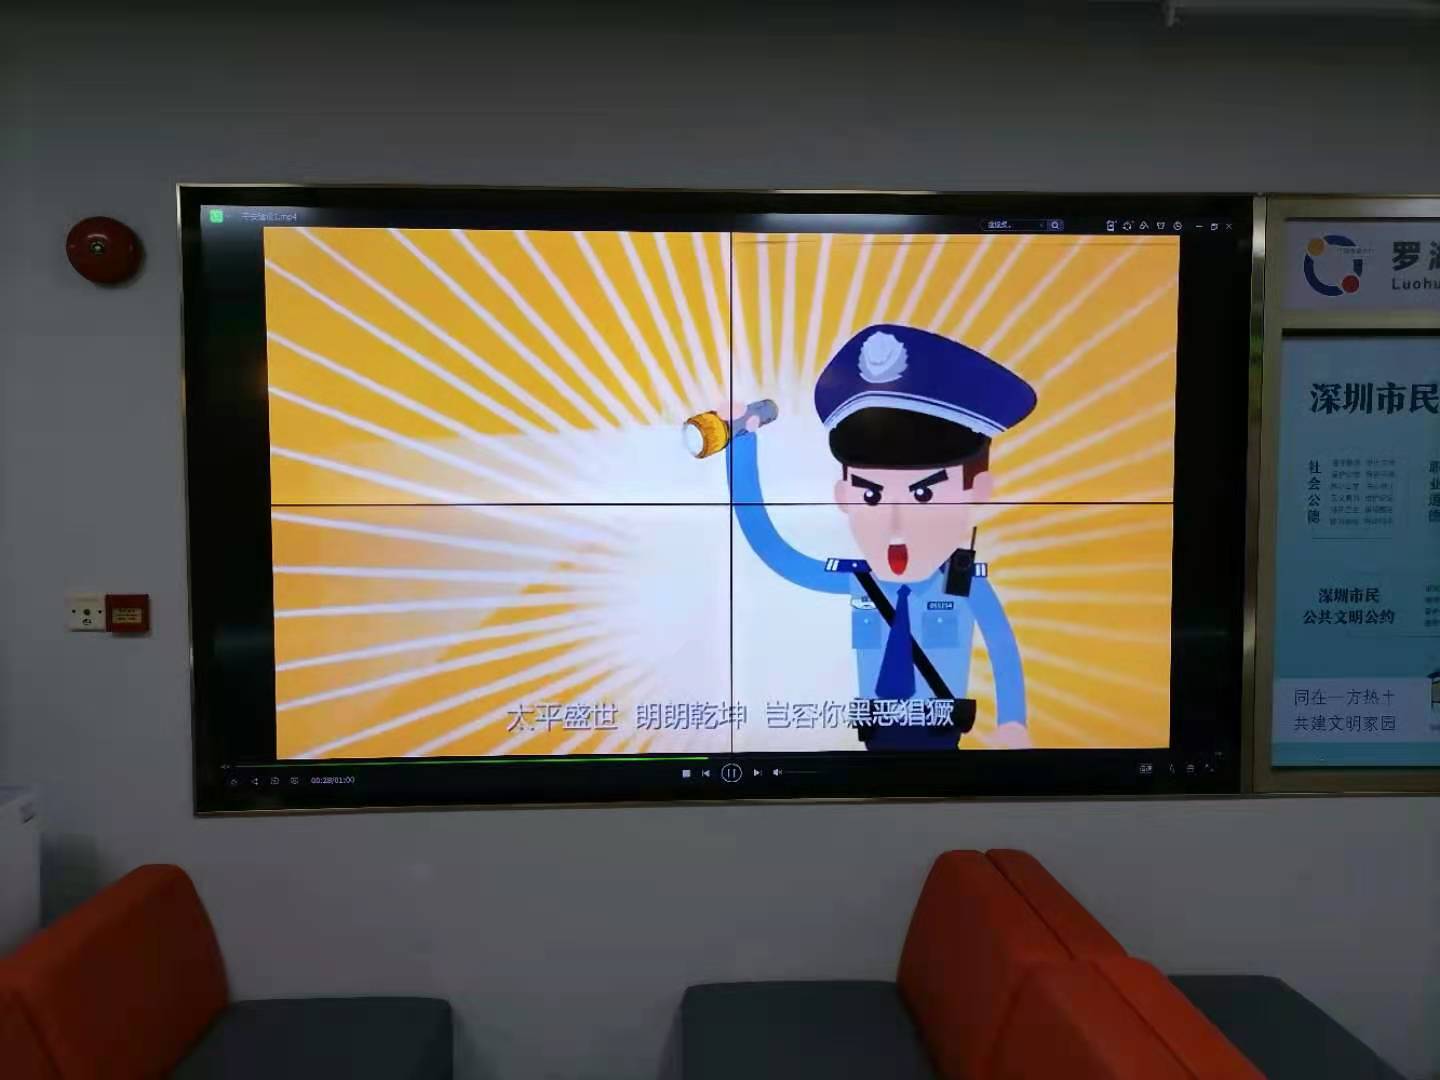 深圳布吉街道办采用55寸液晶拼接屏宣传大屏案例图